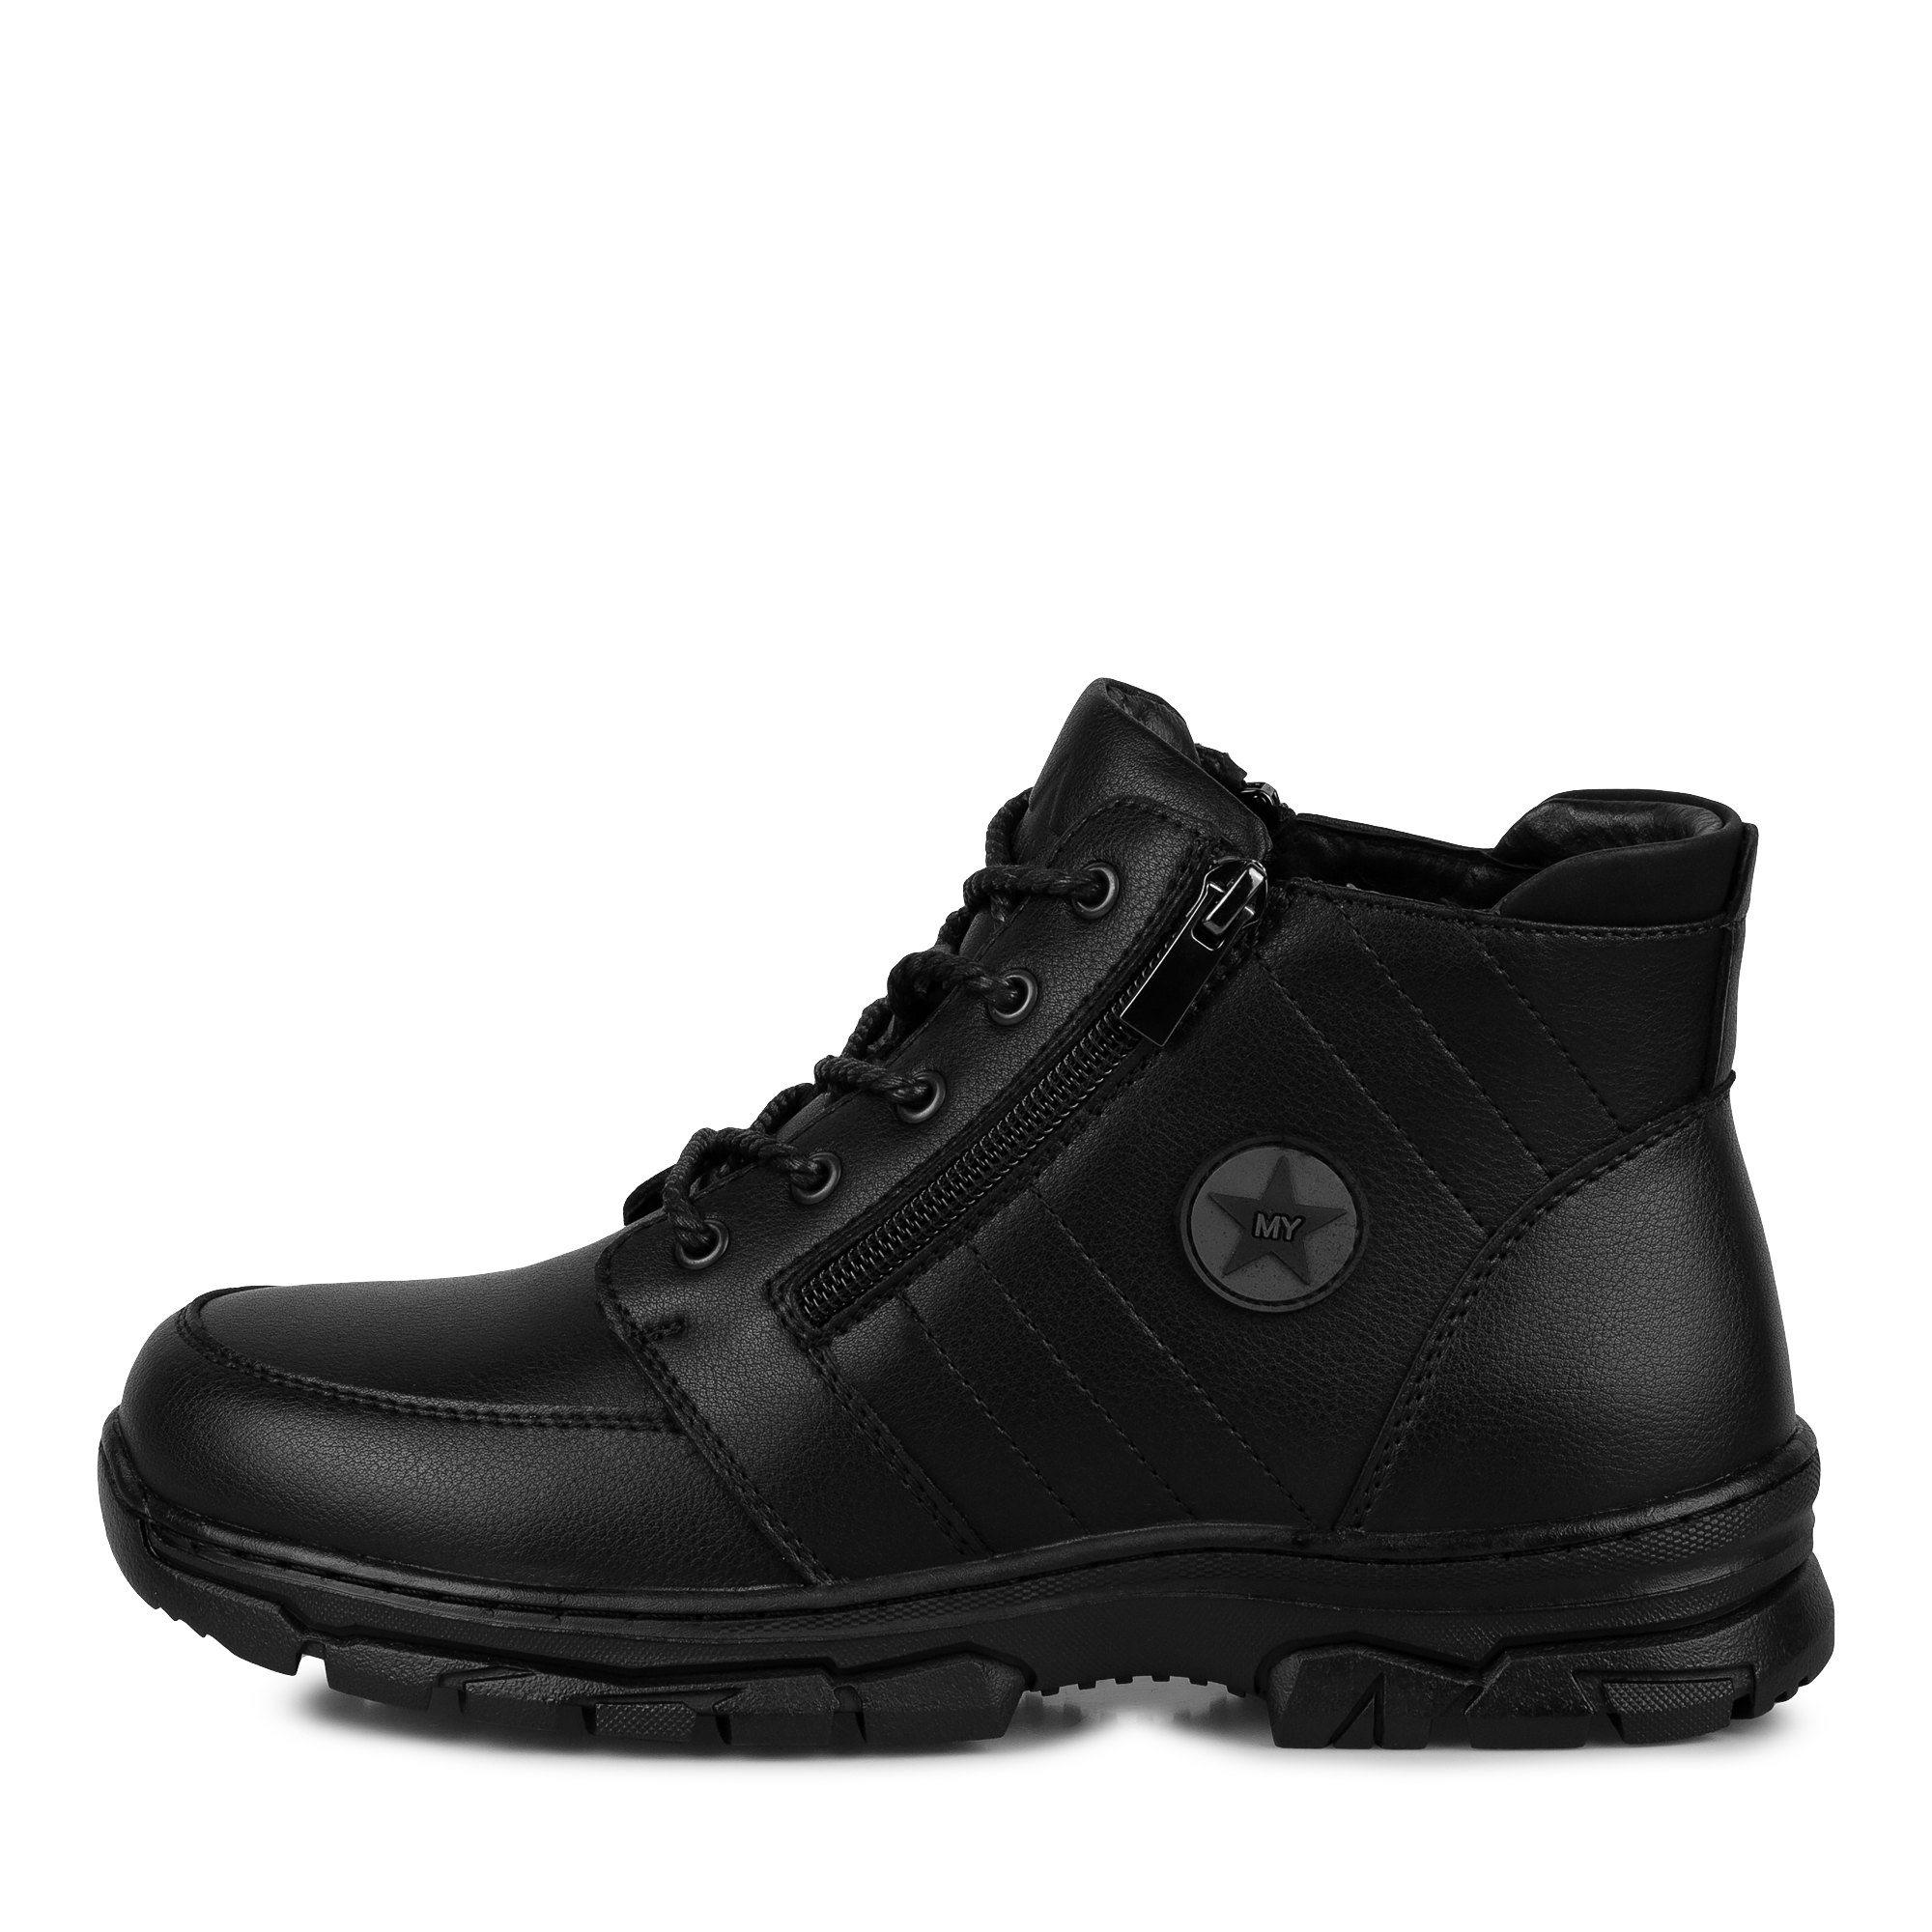 Обувь для мальчиков MUNZ YOUNG 116-498A-5602, цвет черный, размер 41